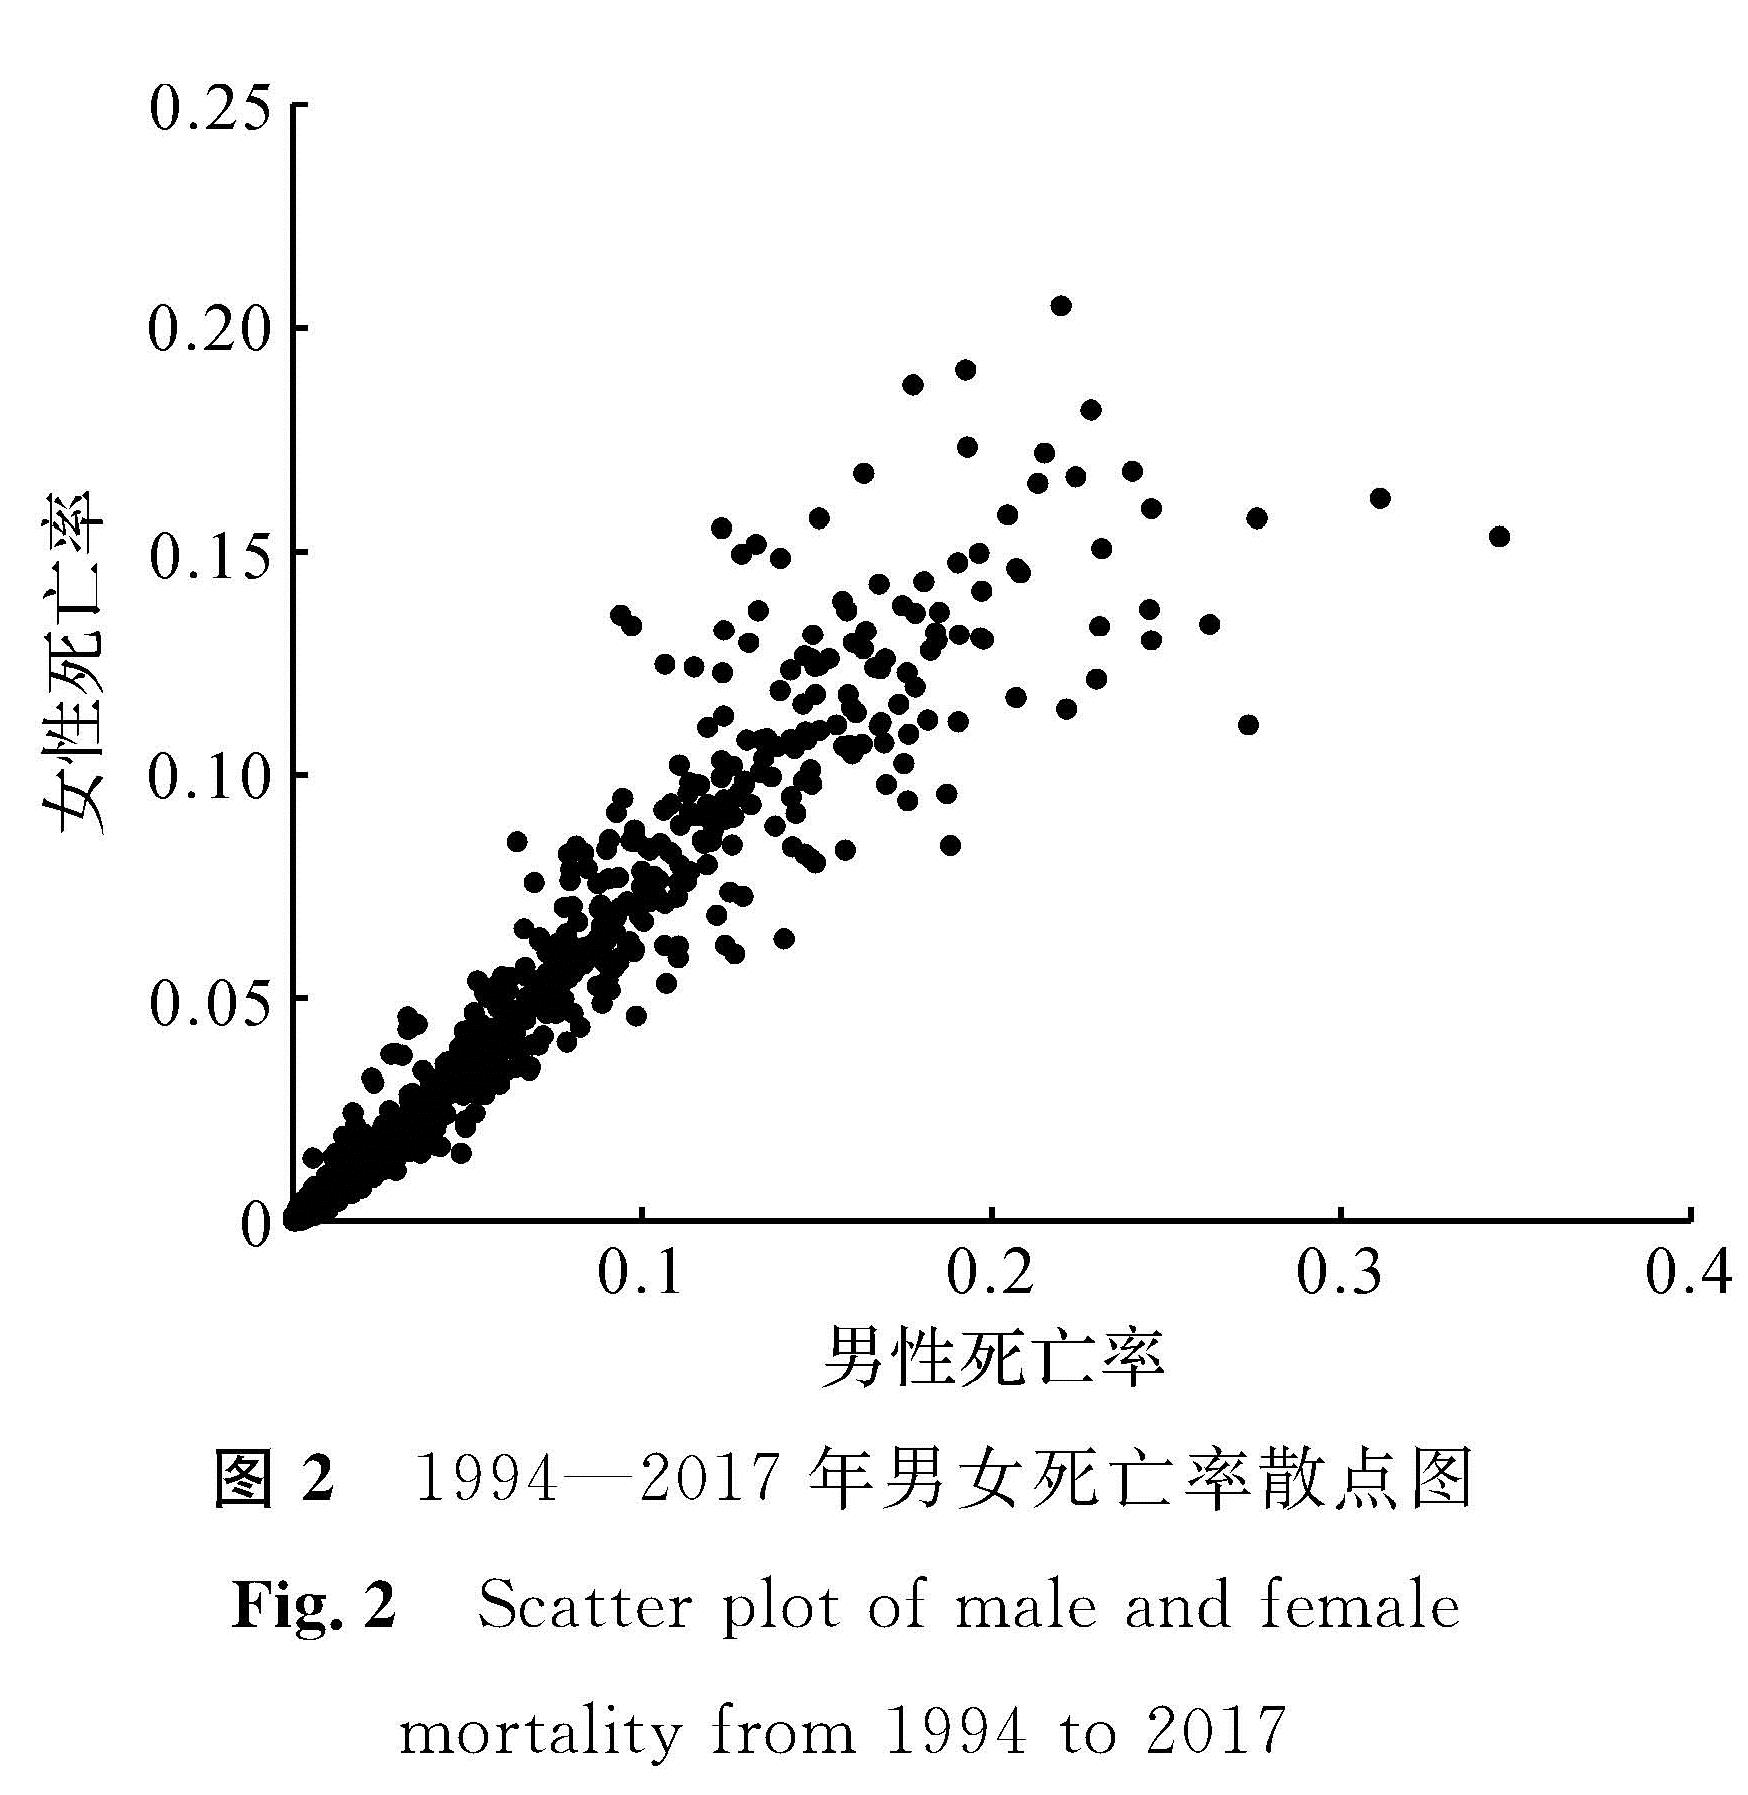 图2 1994—2017年男女死亡率散点图<br/>Fig.2 Scatter plot of male and female mortality from 1994 to 2017